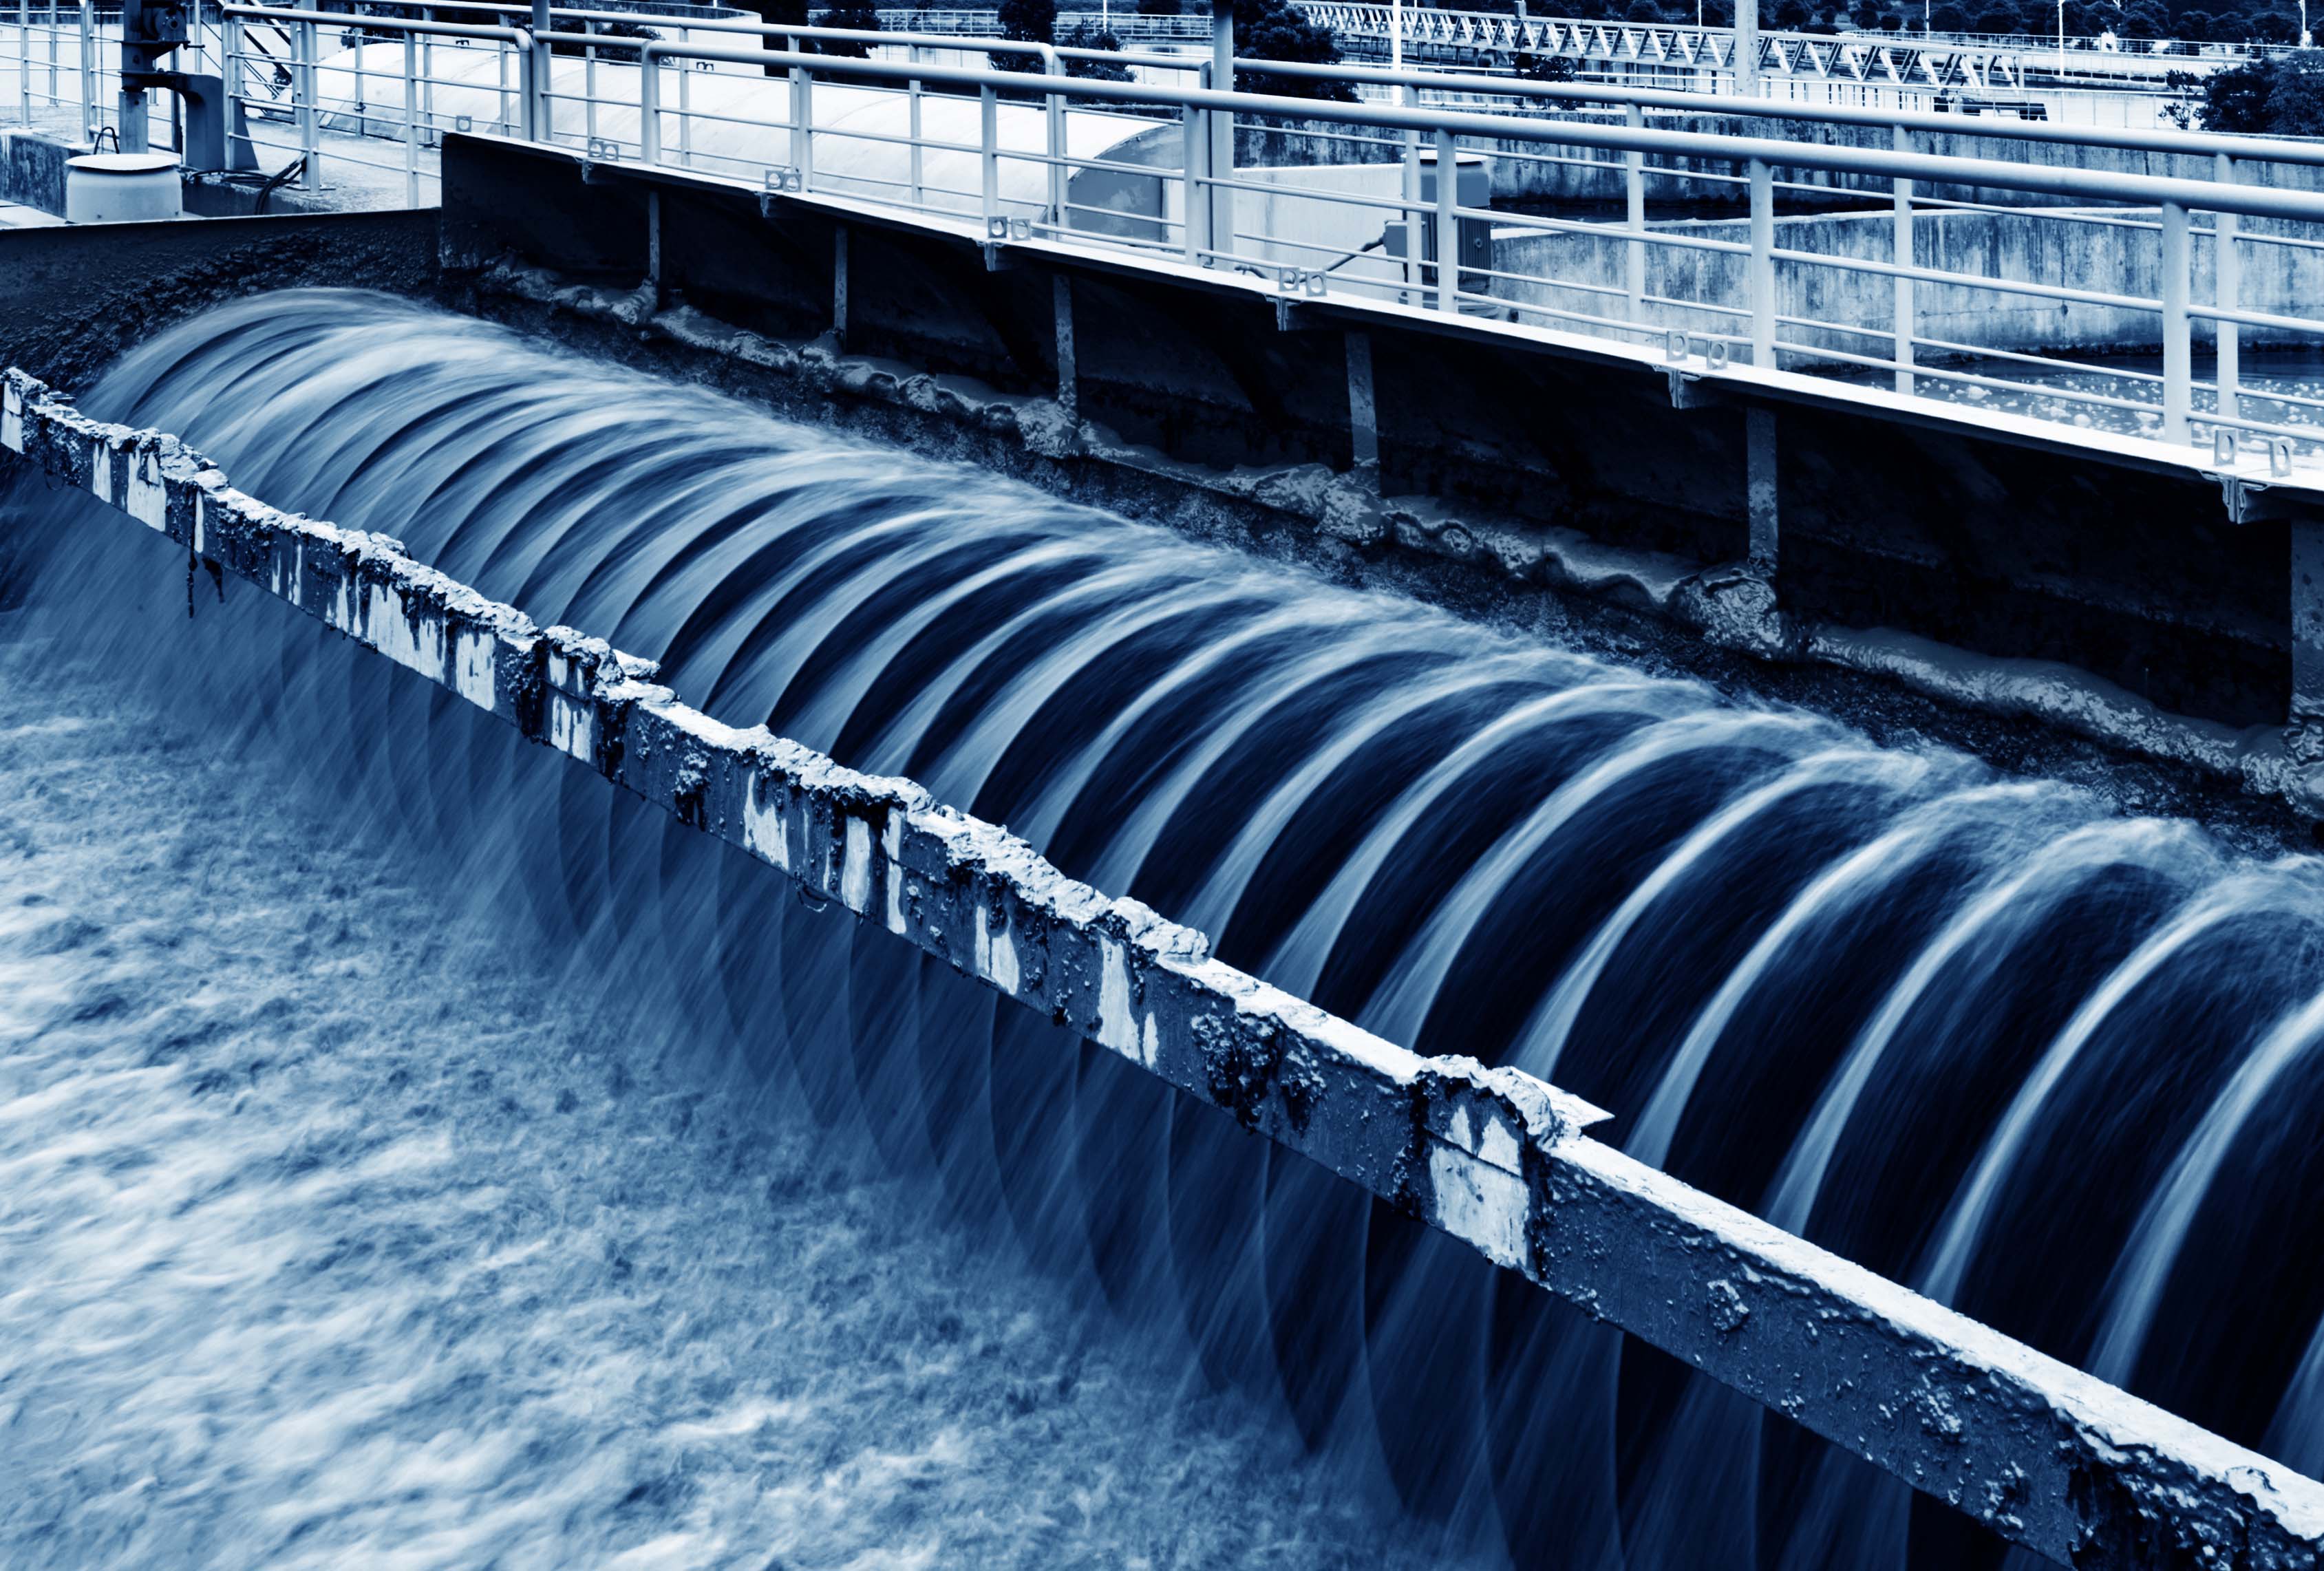 Oasen en OrangeNXT: Samenwerken aan zelfsturende drinkwaterinfrastructuur